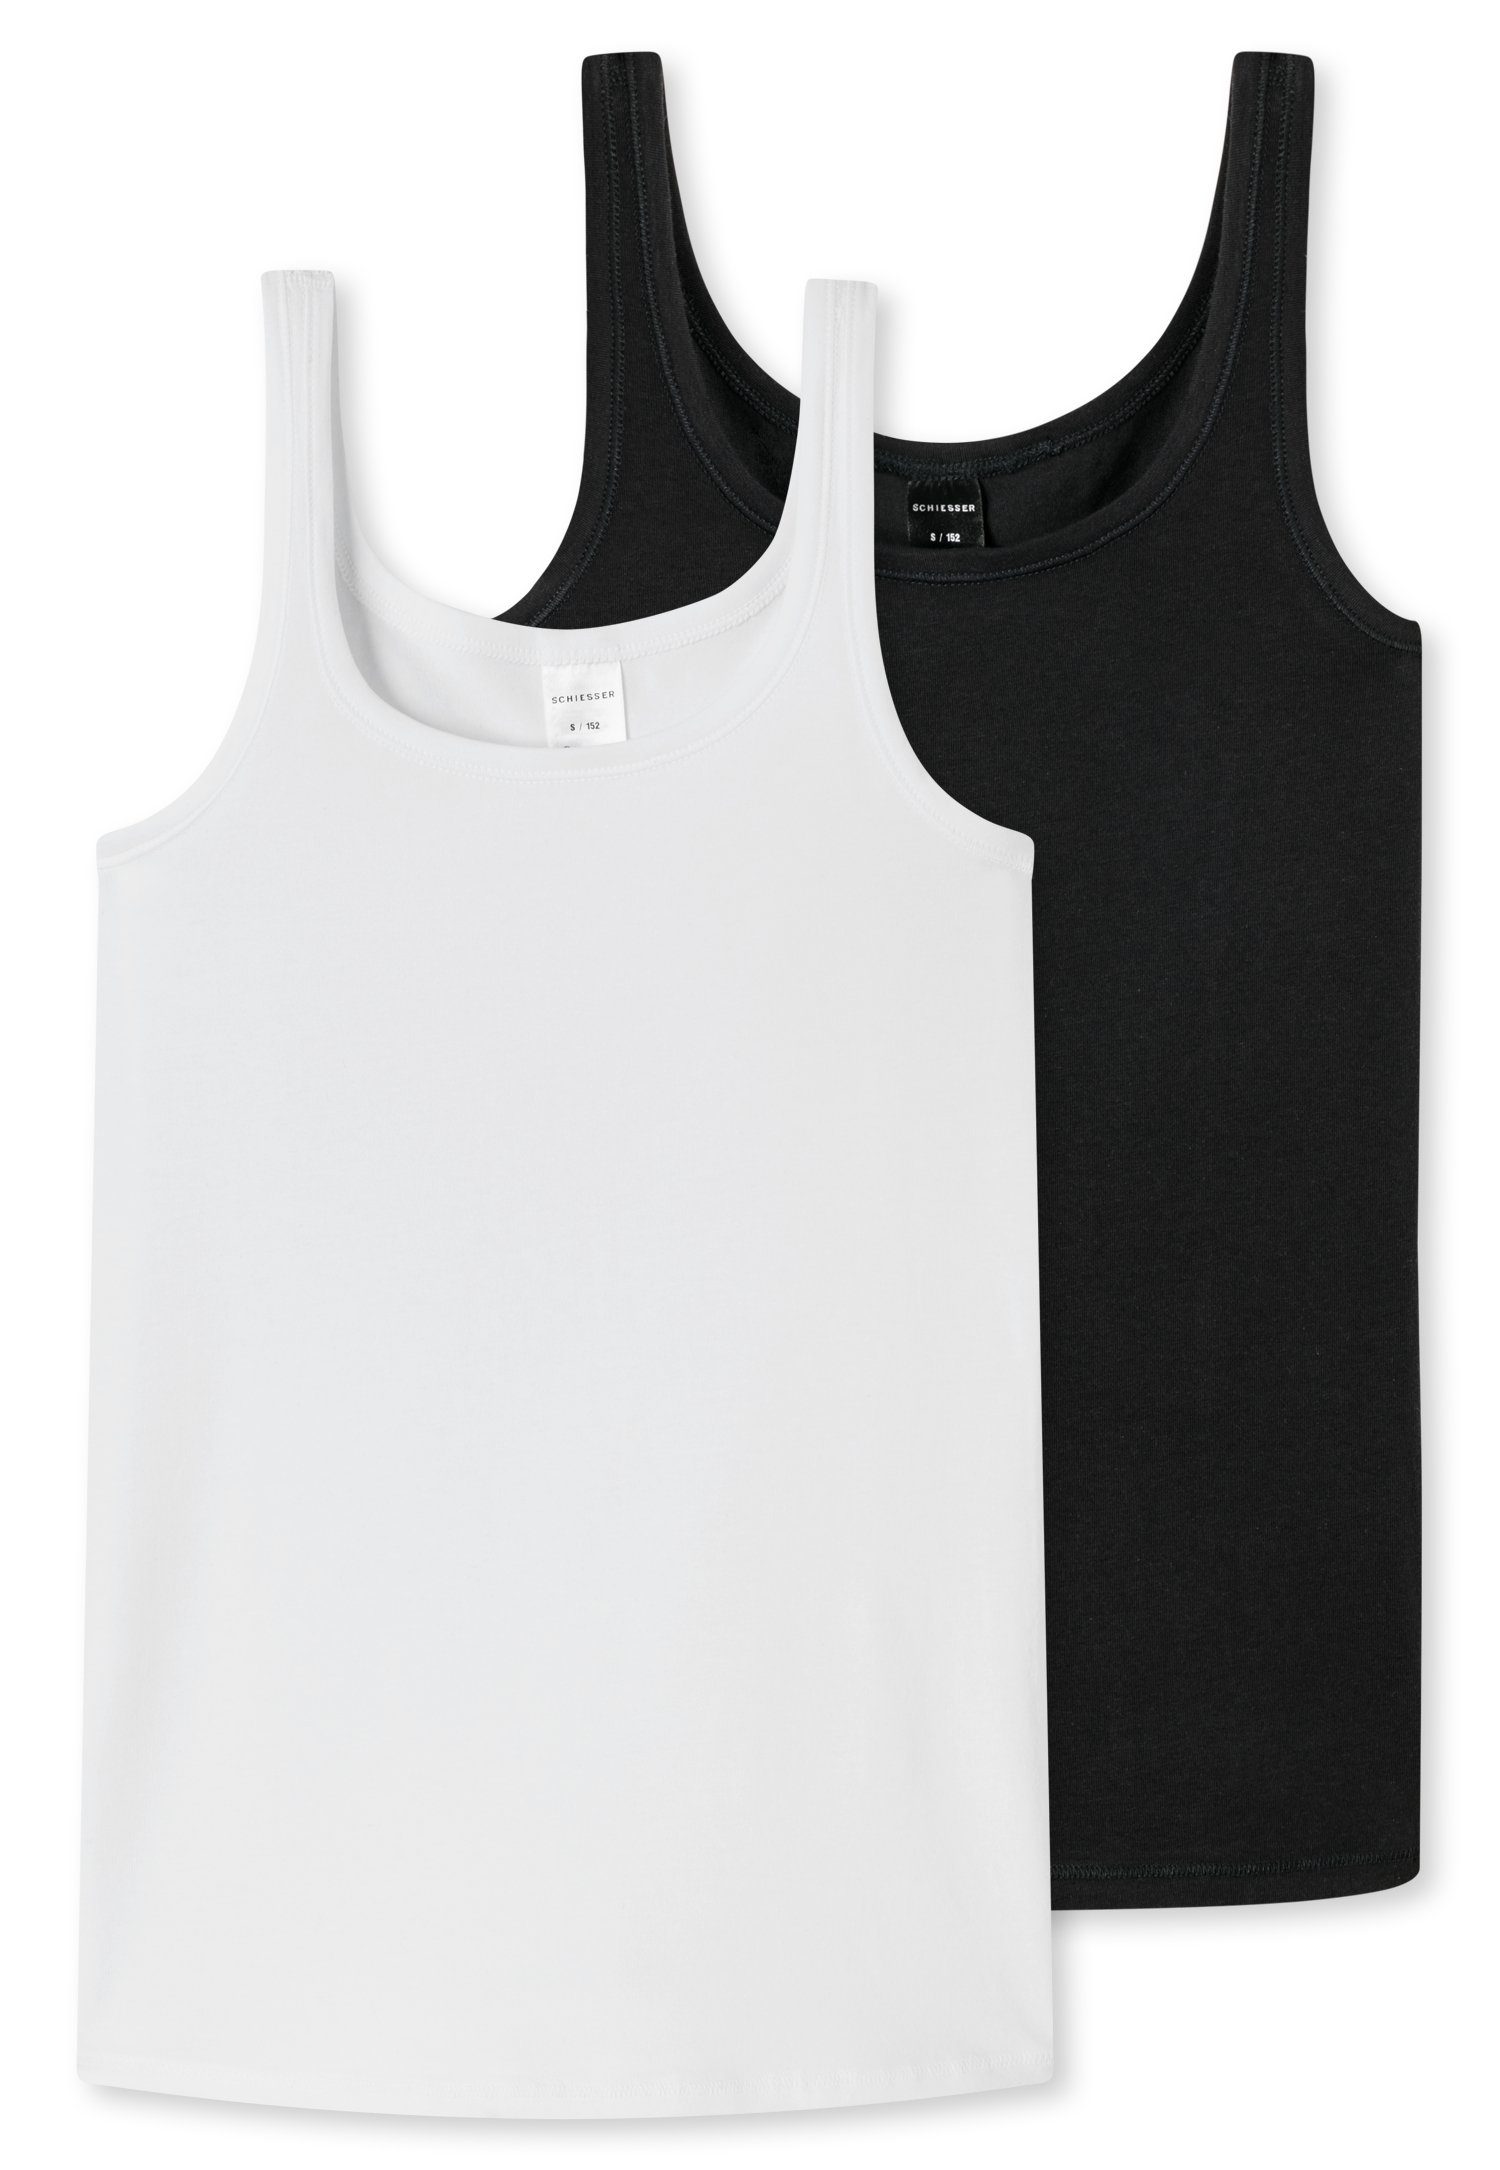 Schiesser Unterhemd (2er-Pack) breiten mit schwarz/weiß Trägern